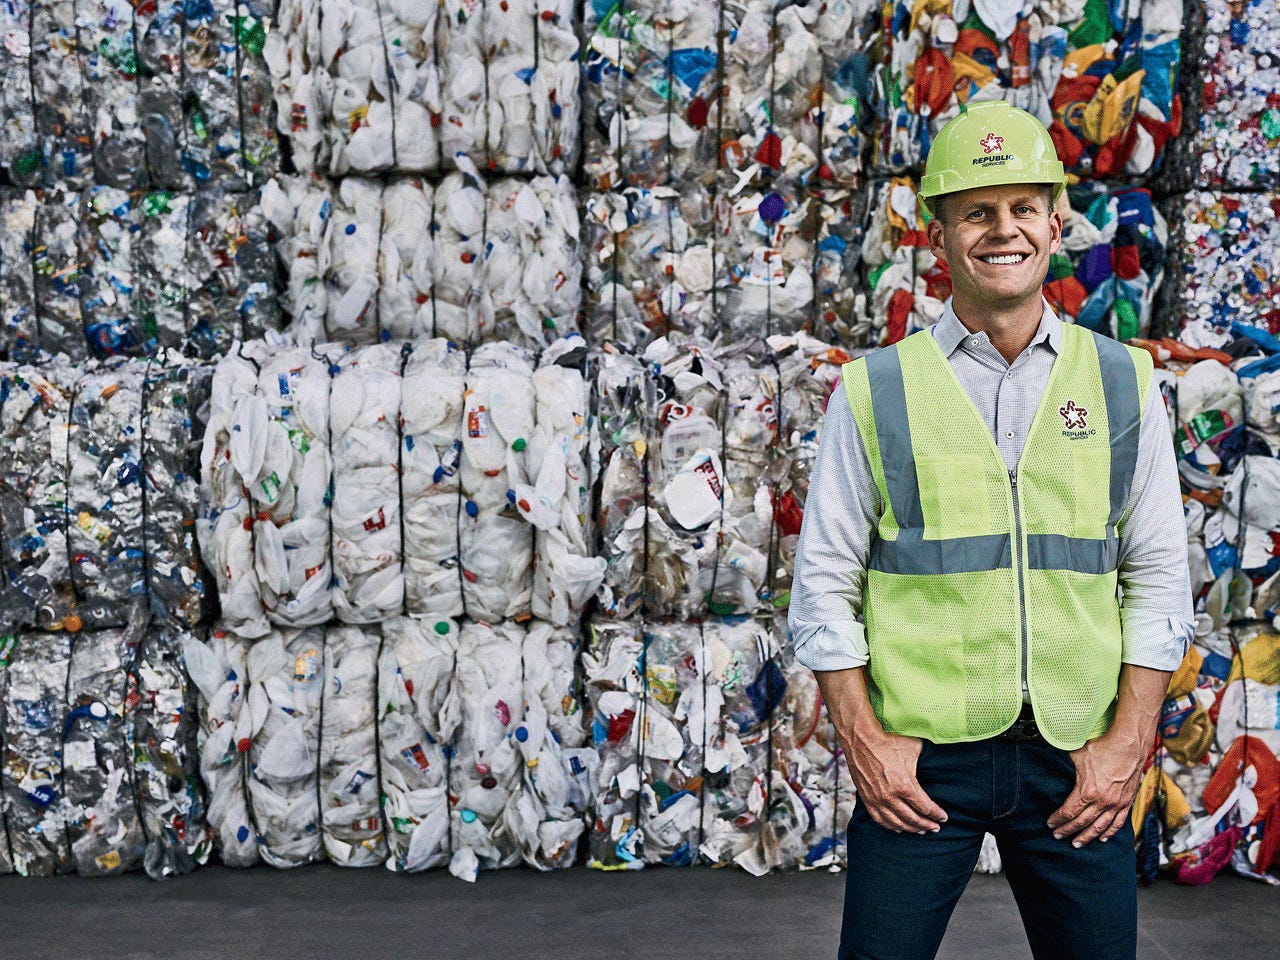 Comment les services de la République soutenus par Bill Gates transforment les déchets en grosses sommes